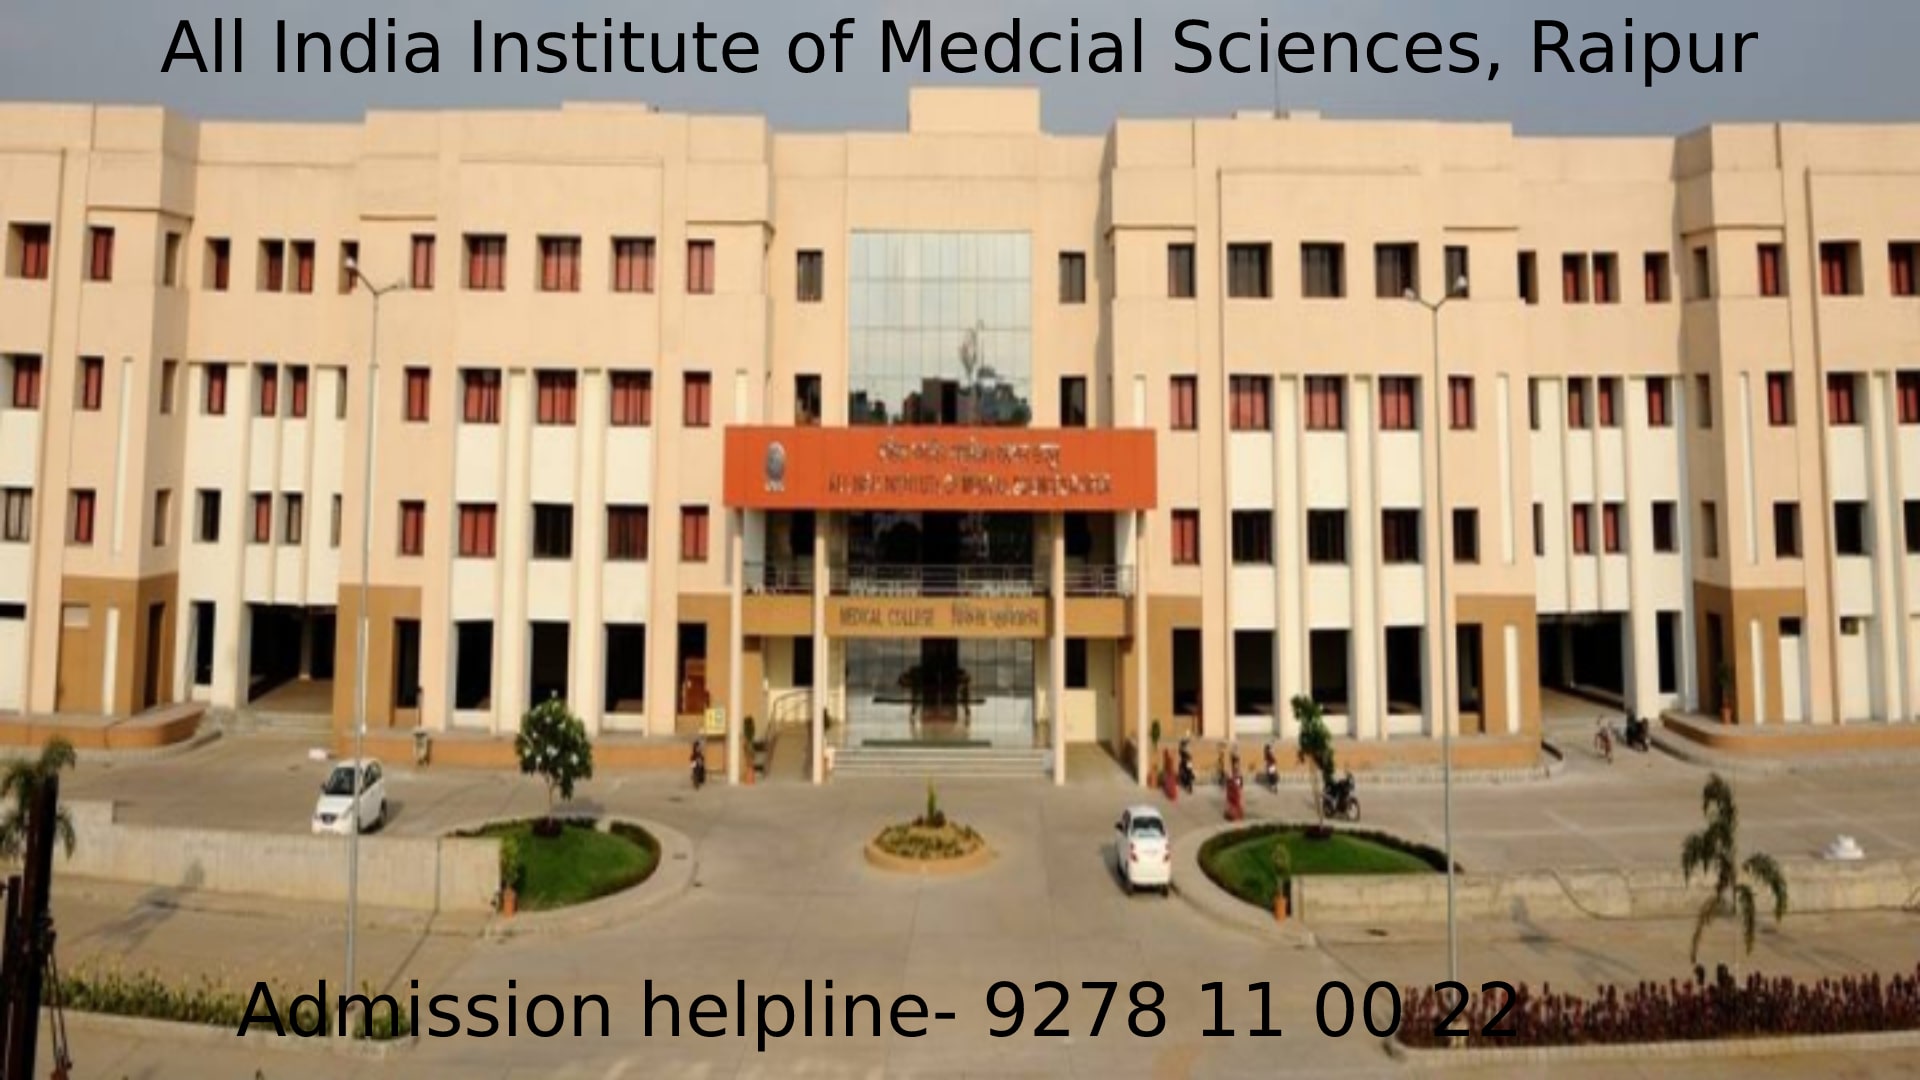 All India Institute of Medical Sciences(AIIMS) Raipur